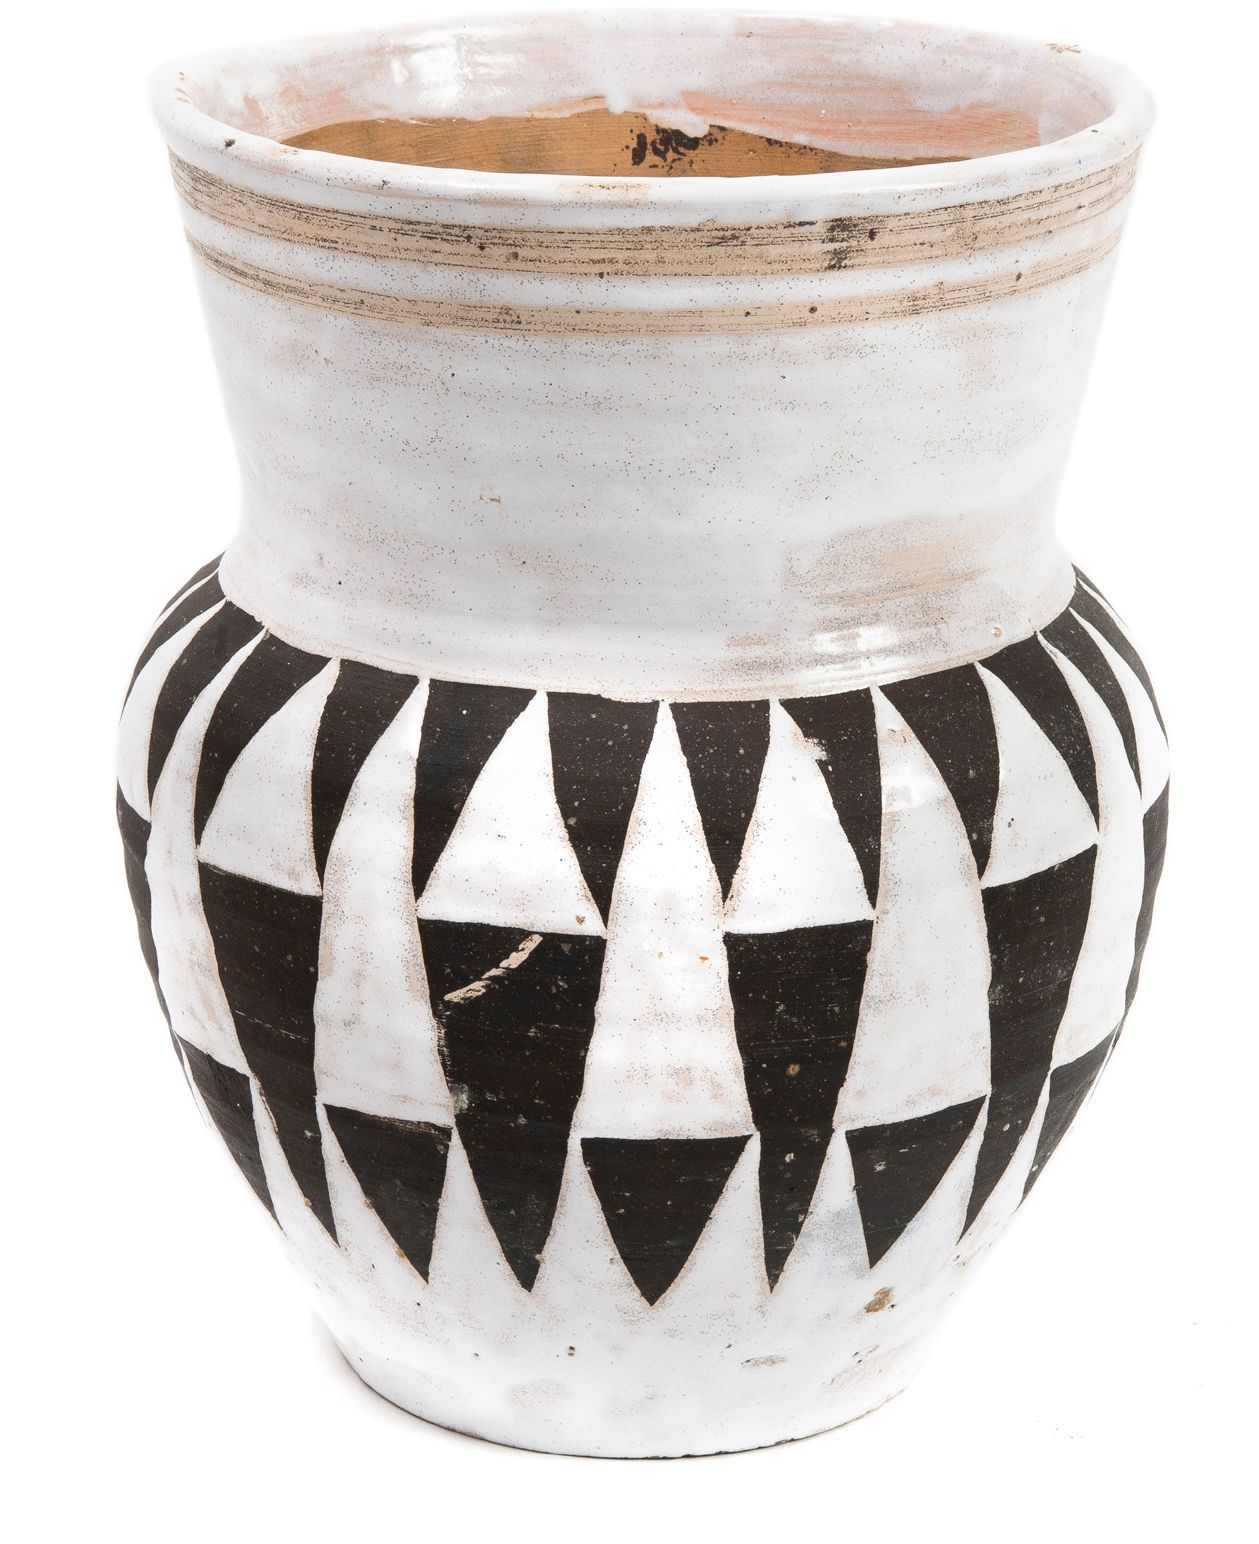 Edouard CAZAUX (1889-1974) 
喇叭形花瓶，约1935-40年。
乳白色珐琅彩陶瓷，黑色三角形几何纹饰。
背面有"céramique d&hellip;